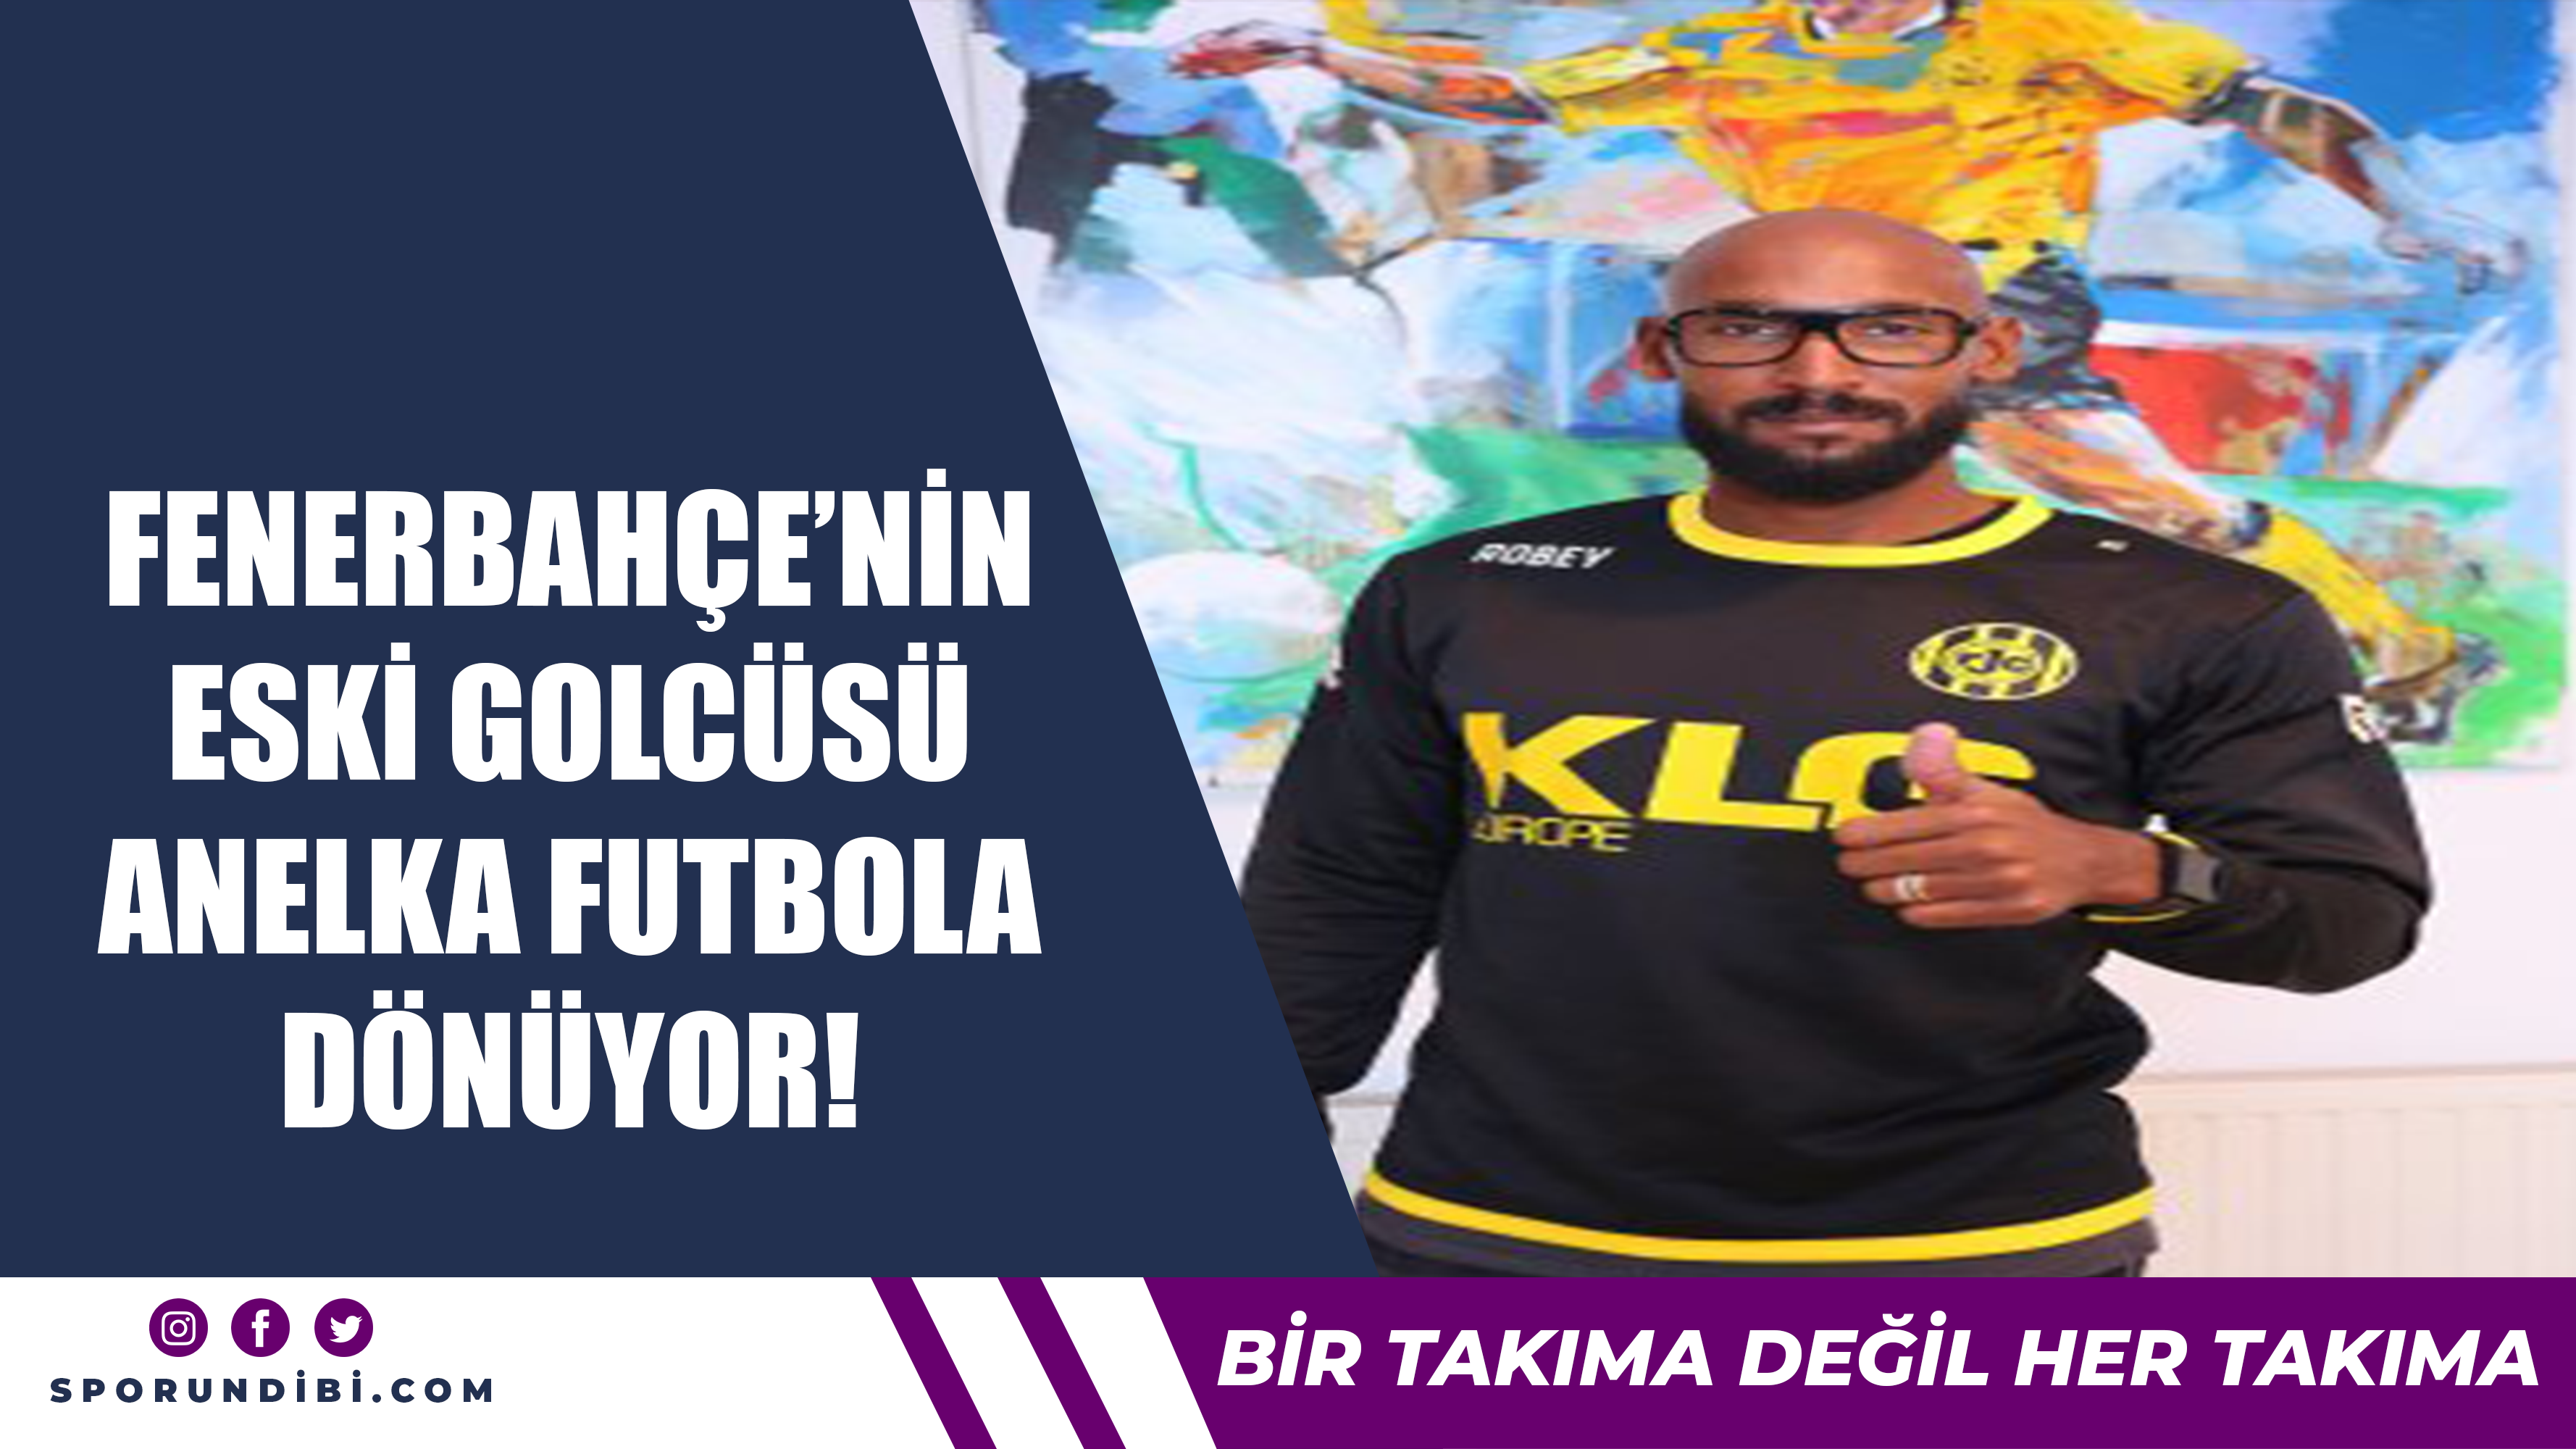 Fenerbahçe'nin eski golcüsü Anelka futbola dönüyor!